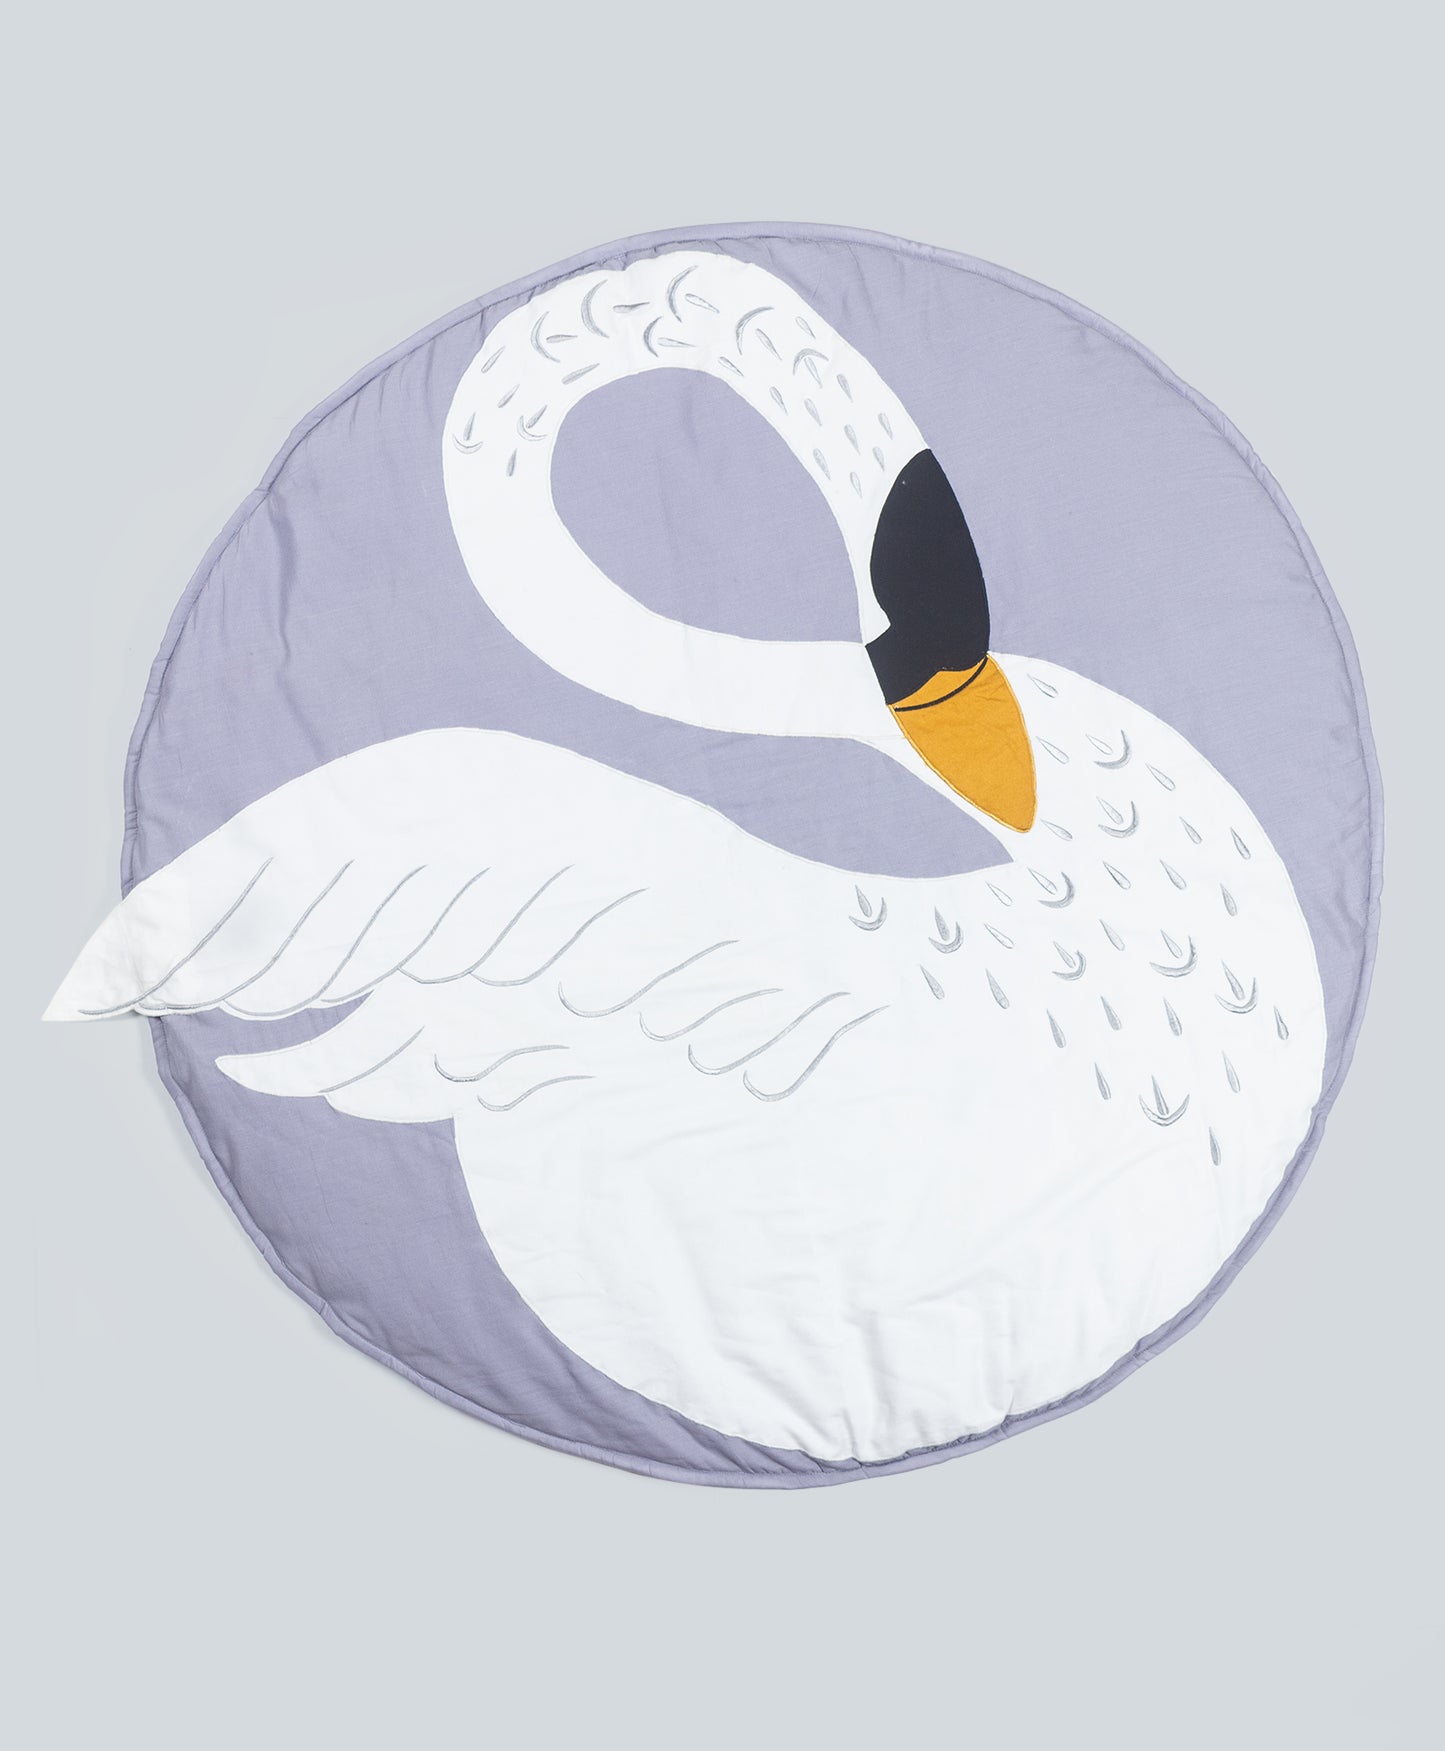 swan playmat